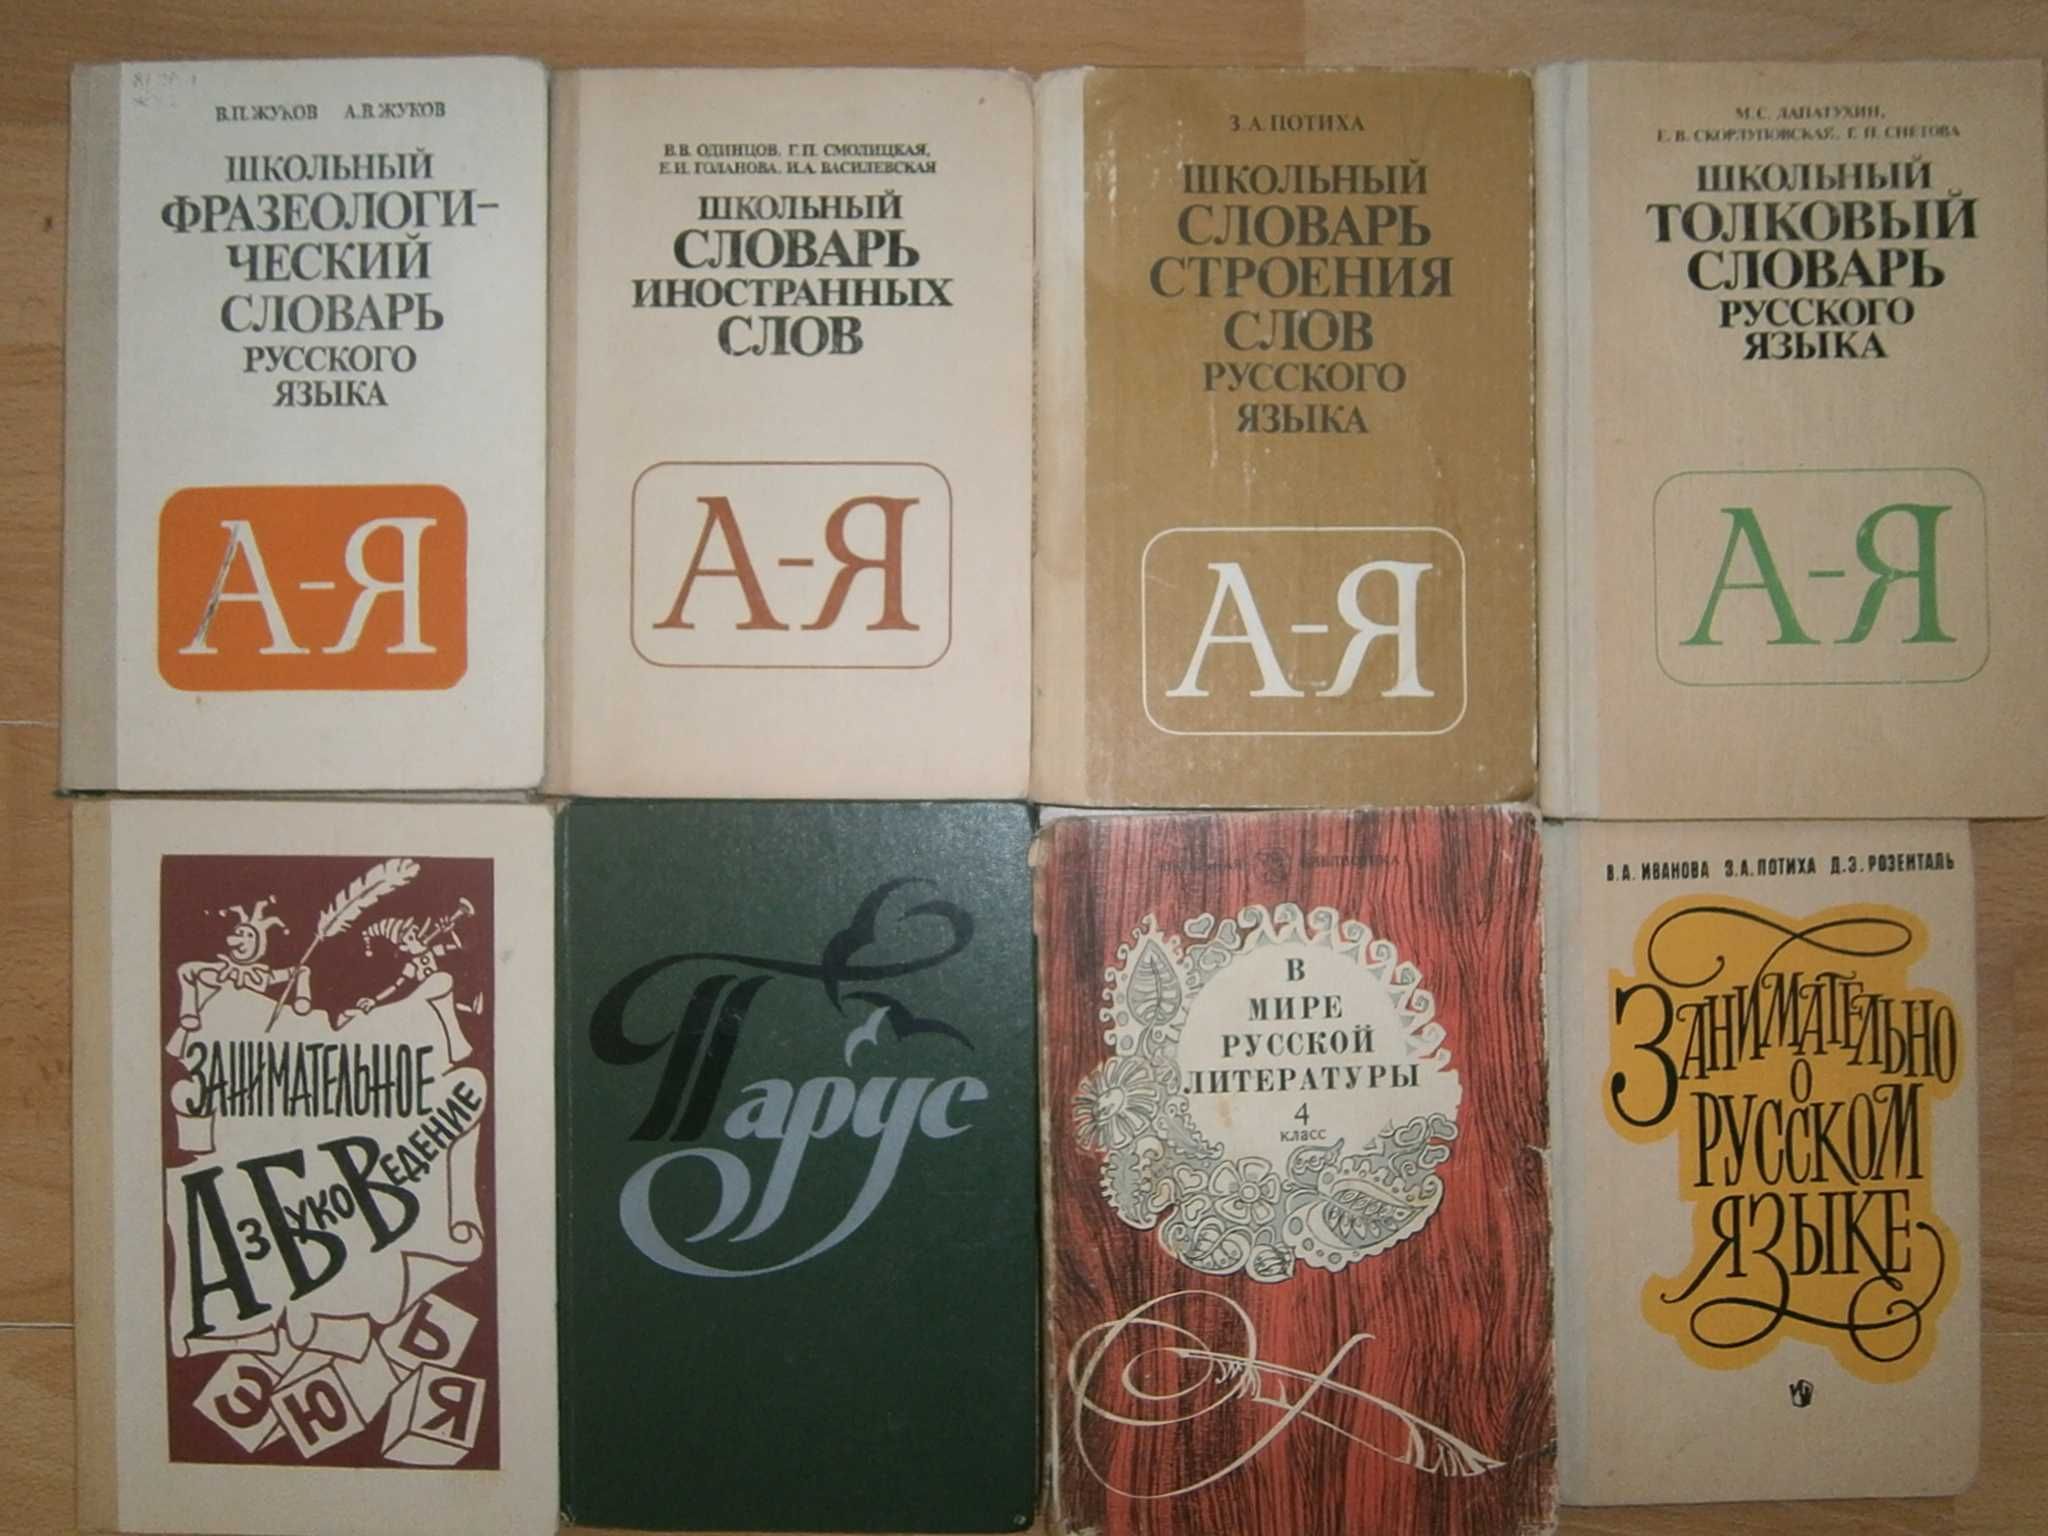 Русский язык и литература Учебники и пособия для школ и техникумов